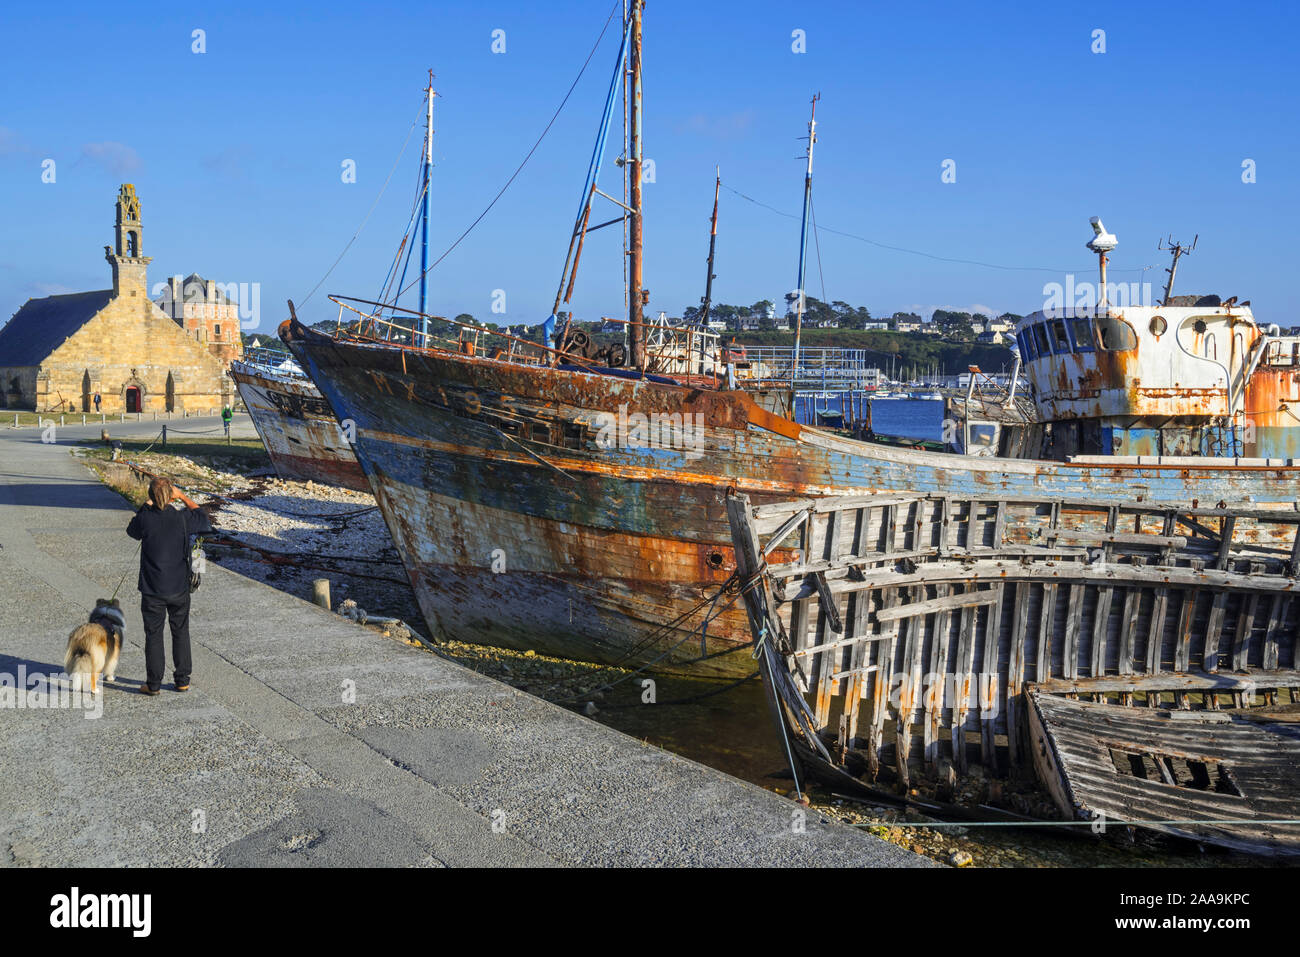 Visita turistica di relitti di legno vecchio trawler barche da pesca / lobster barche nel porto / porto di Camaret-sur-Mer Finistère Bretagna, Francia Foto Stock